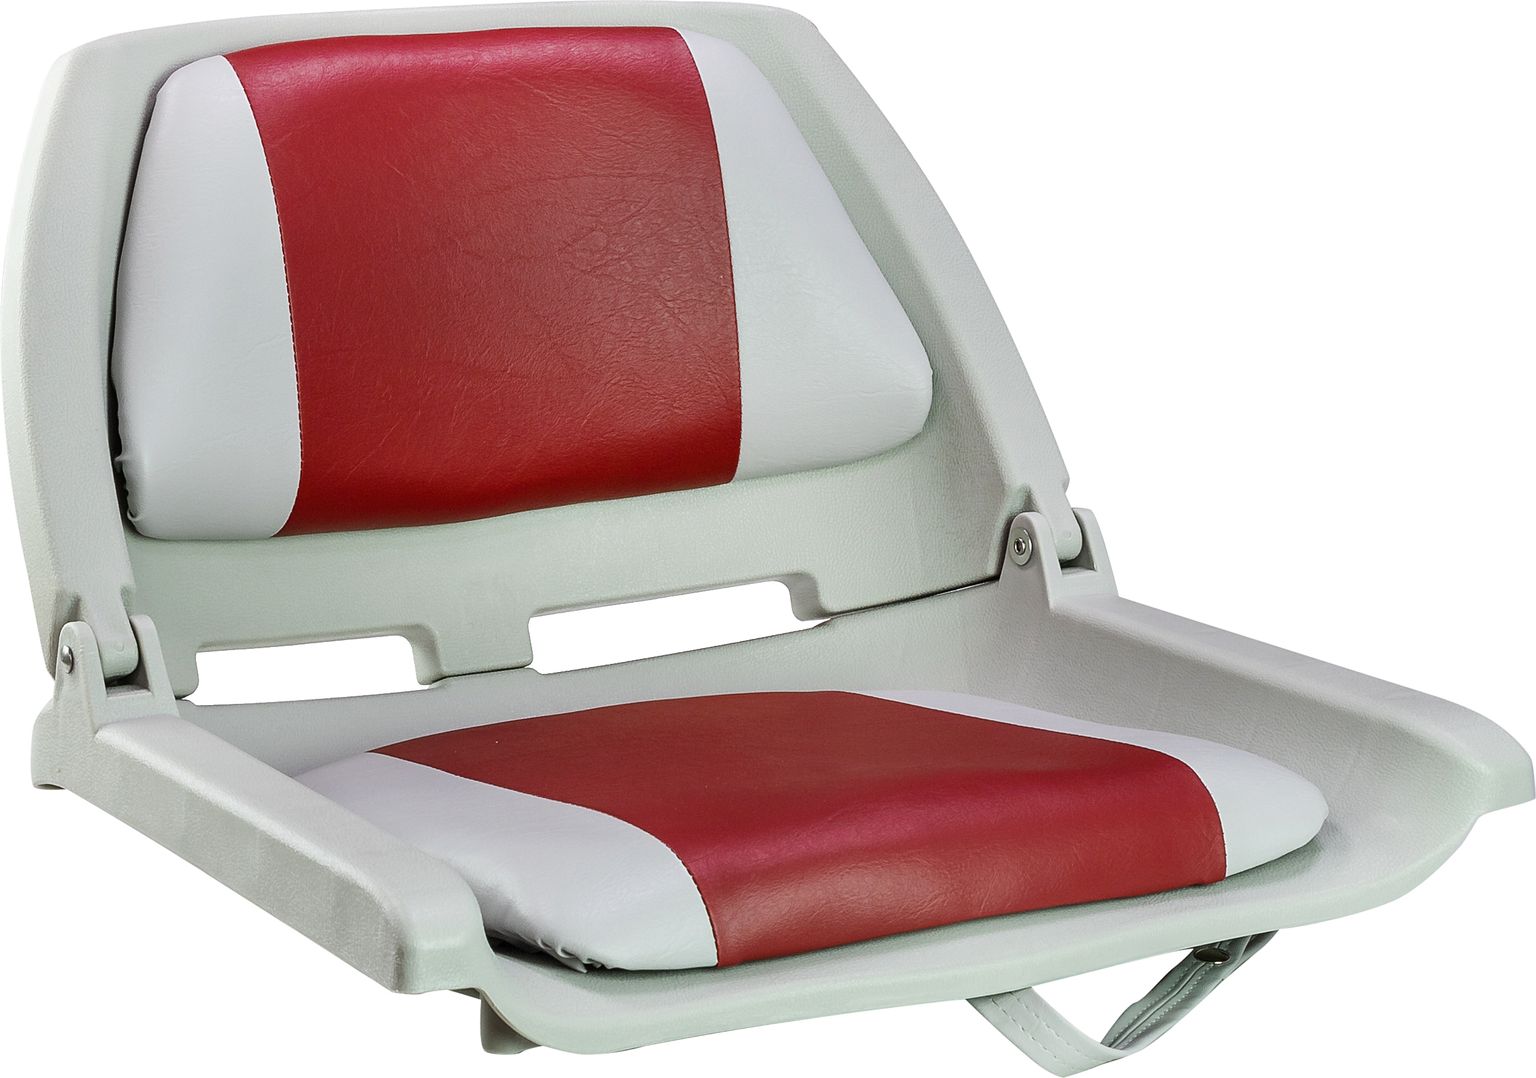 Кресло мягкое складное, обивка винил, цвет серый/красный, Marine Rocket 75109GR-MR кресло мягкое складное камуфляж камыш marine rocket 75109camo99 mr